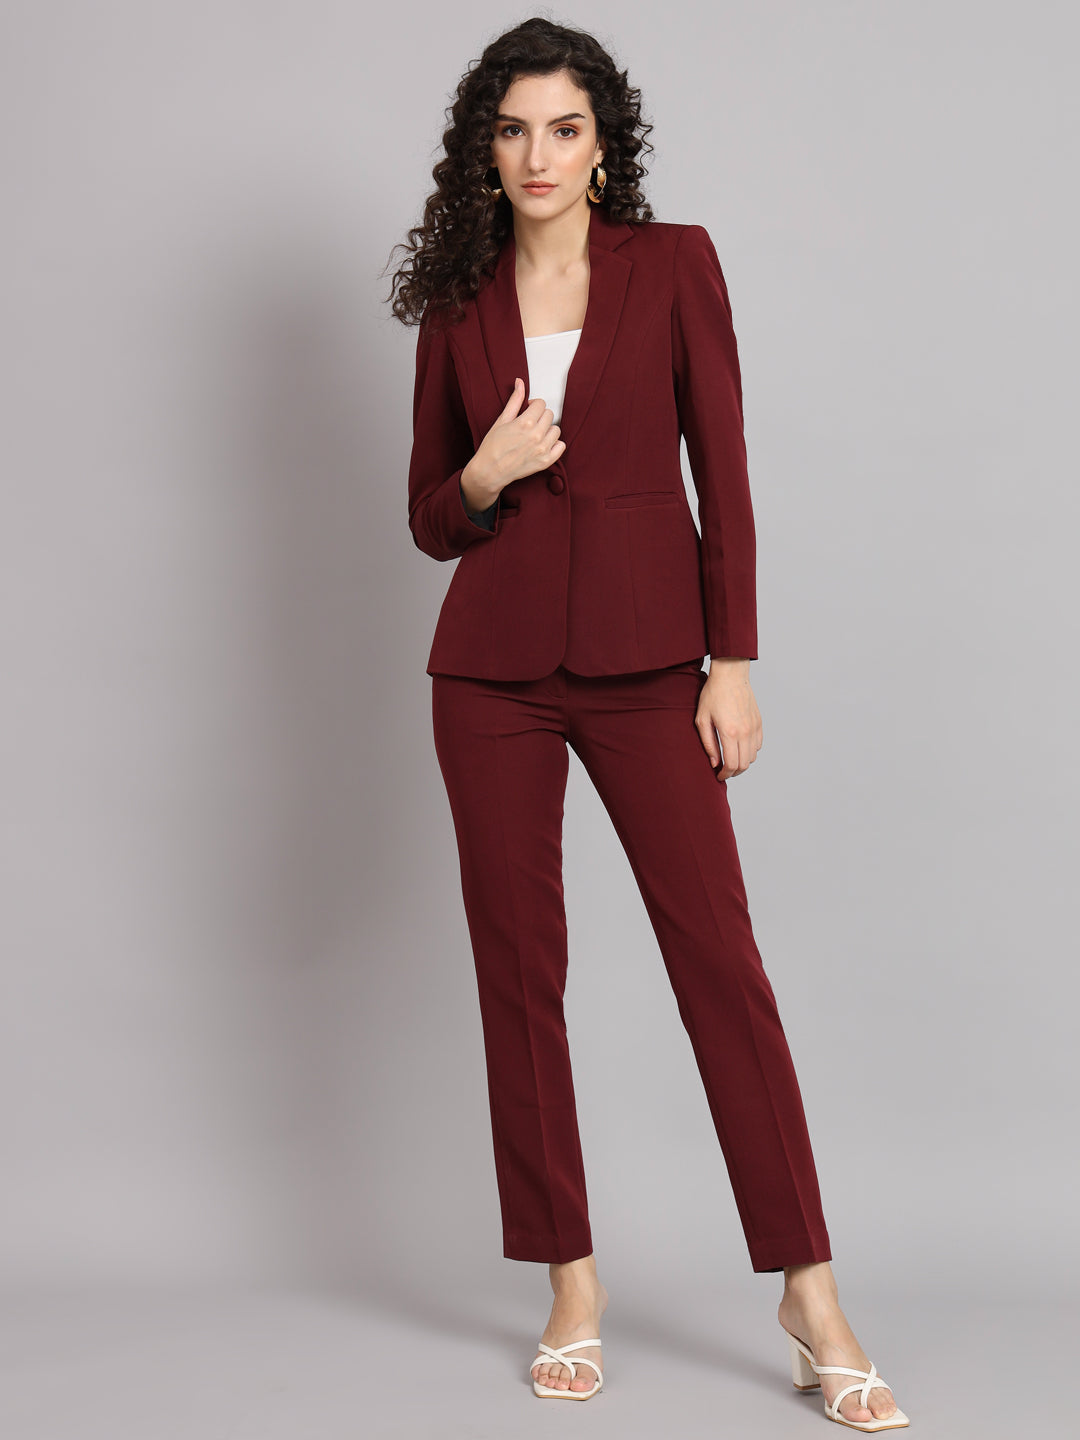  Beige Women's Blazer Suits Pant Suits for Women Dressy